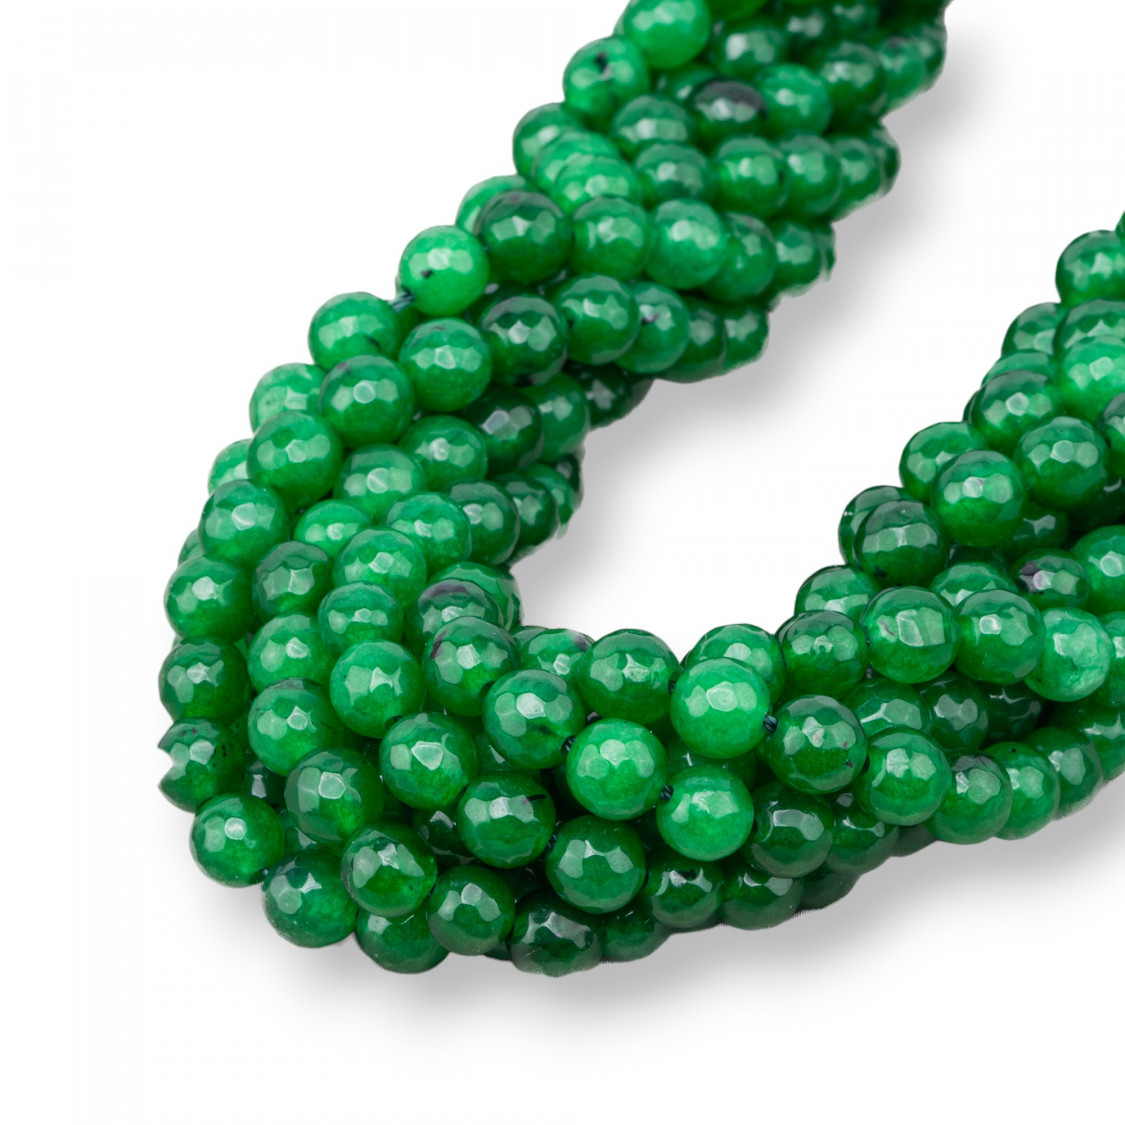 Collezione gioielli verde, giada: prezzi, sconti e offerte moda